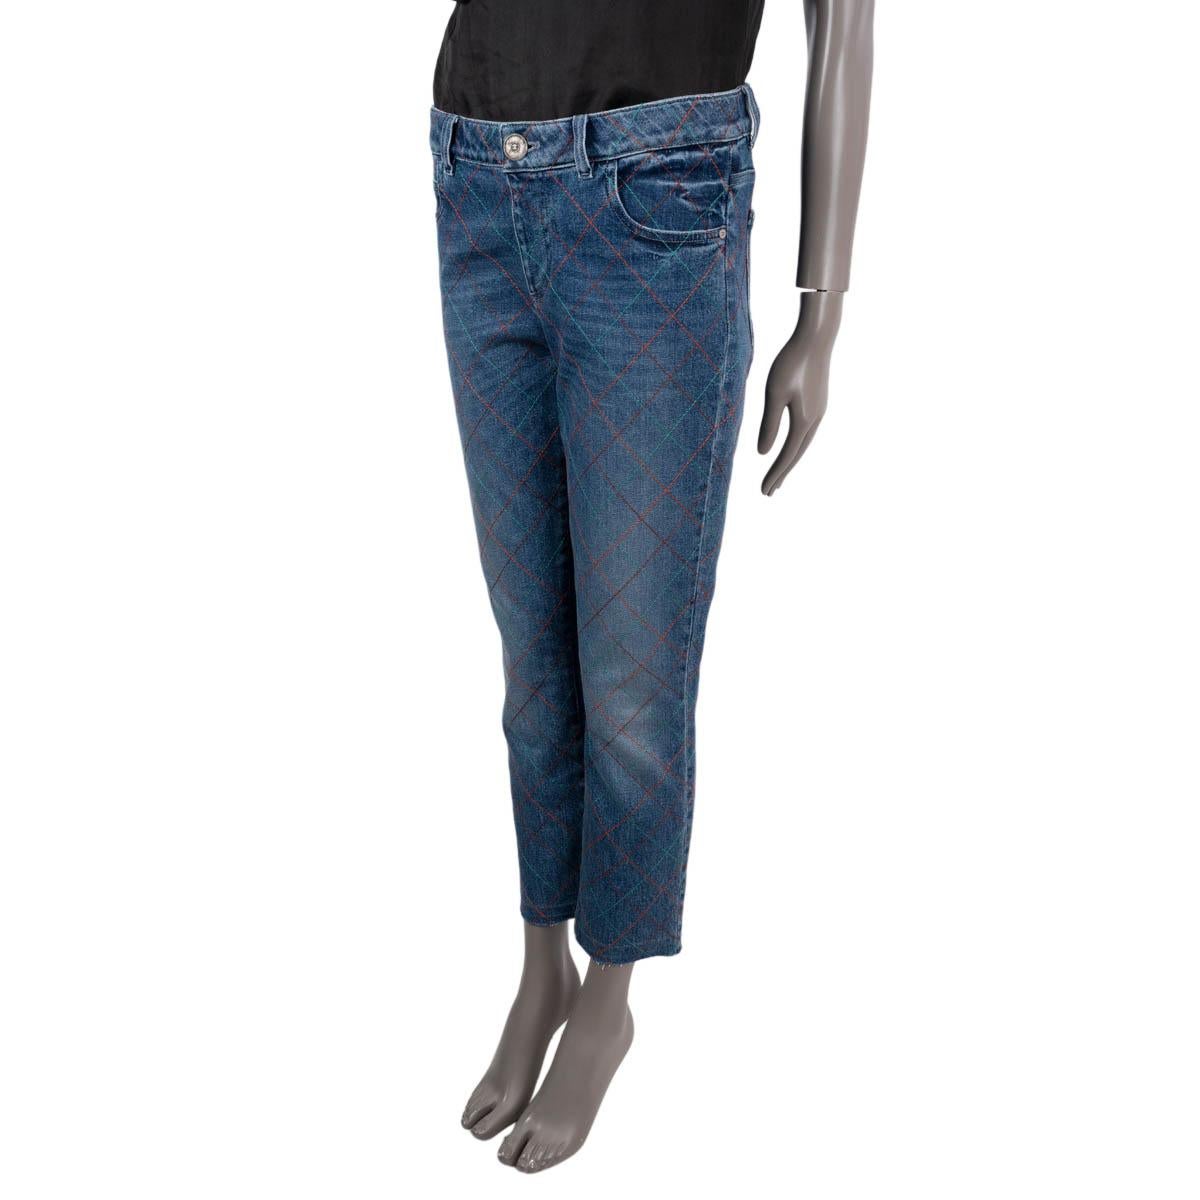 Jeans Chanel 100% authentique en denim bleu de coton (98%) et polyuréthane (2%) avec surpiqûres en orange, bordeaux et turquoise. Il est doté de poches fendues sur le devant et au dos et de passants de ceinture. Il s'ouvre par une fermeture à